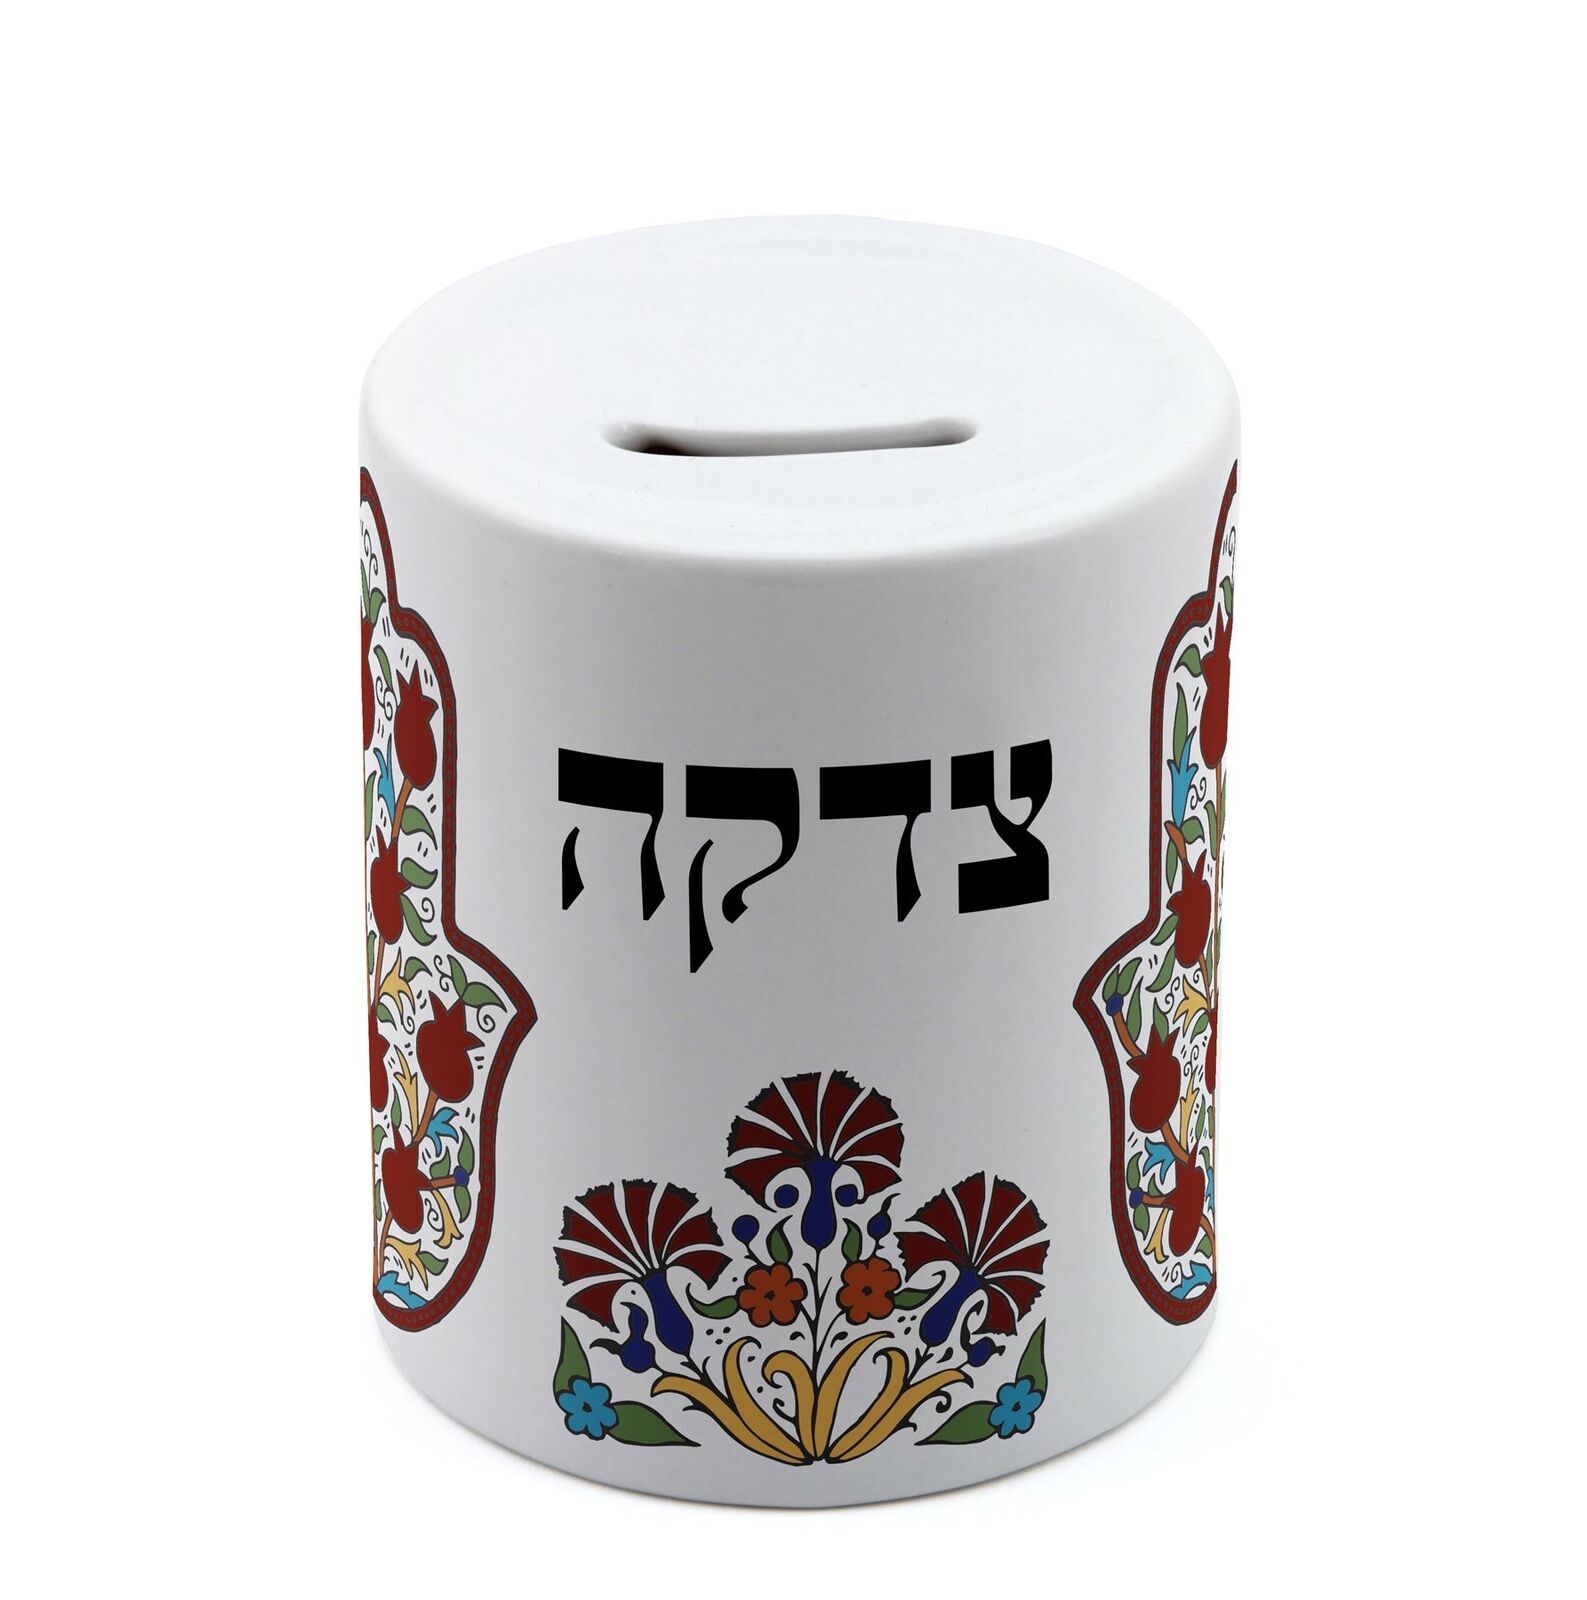 Charity Box money save Gift Israel Armeni Ceramic Tzedakah Judaica hamsa hand